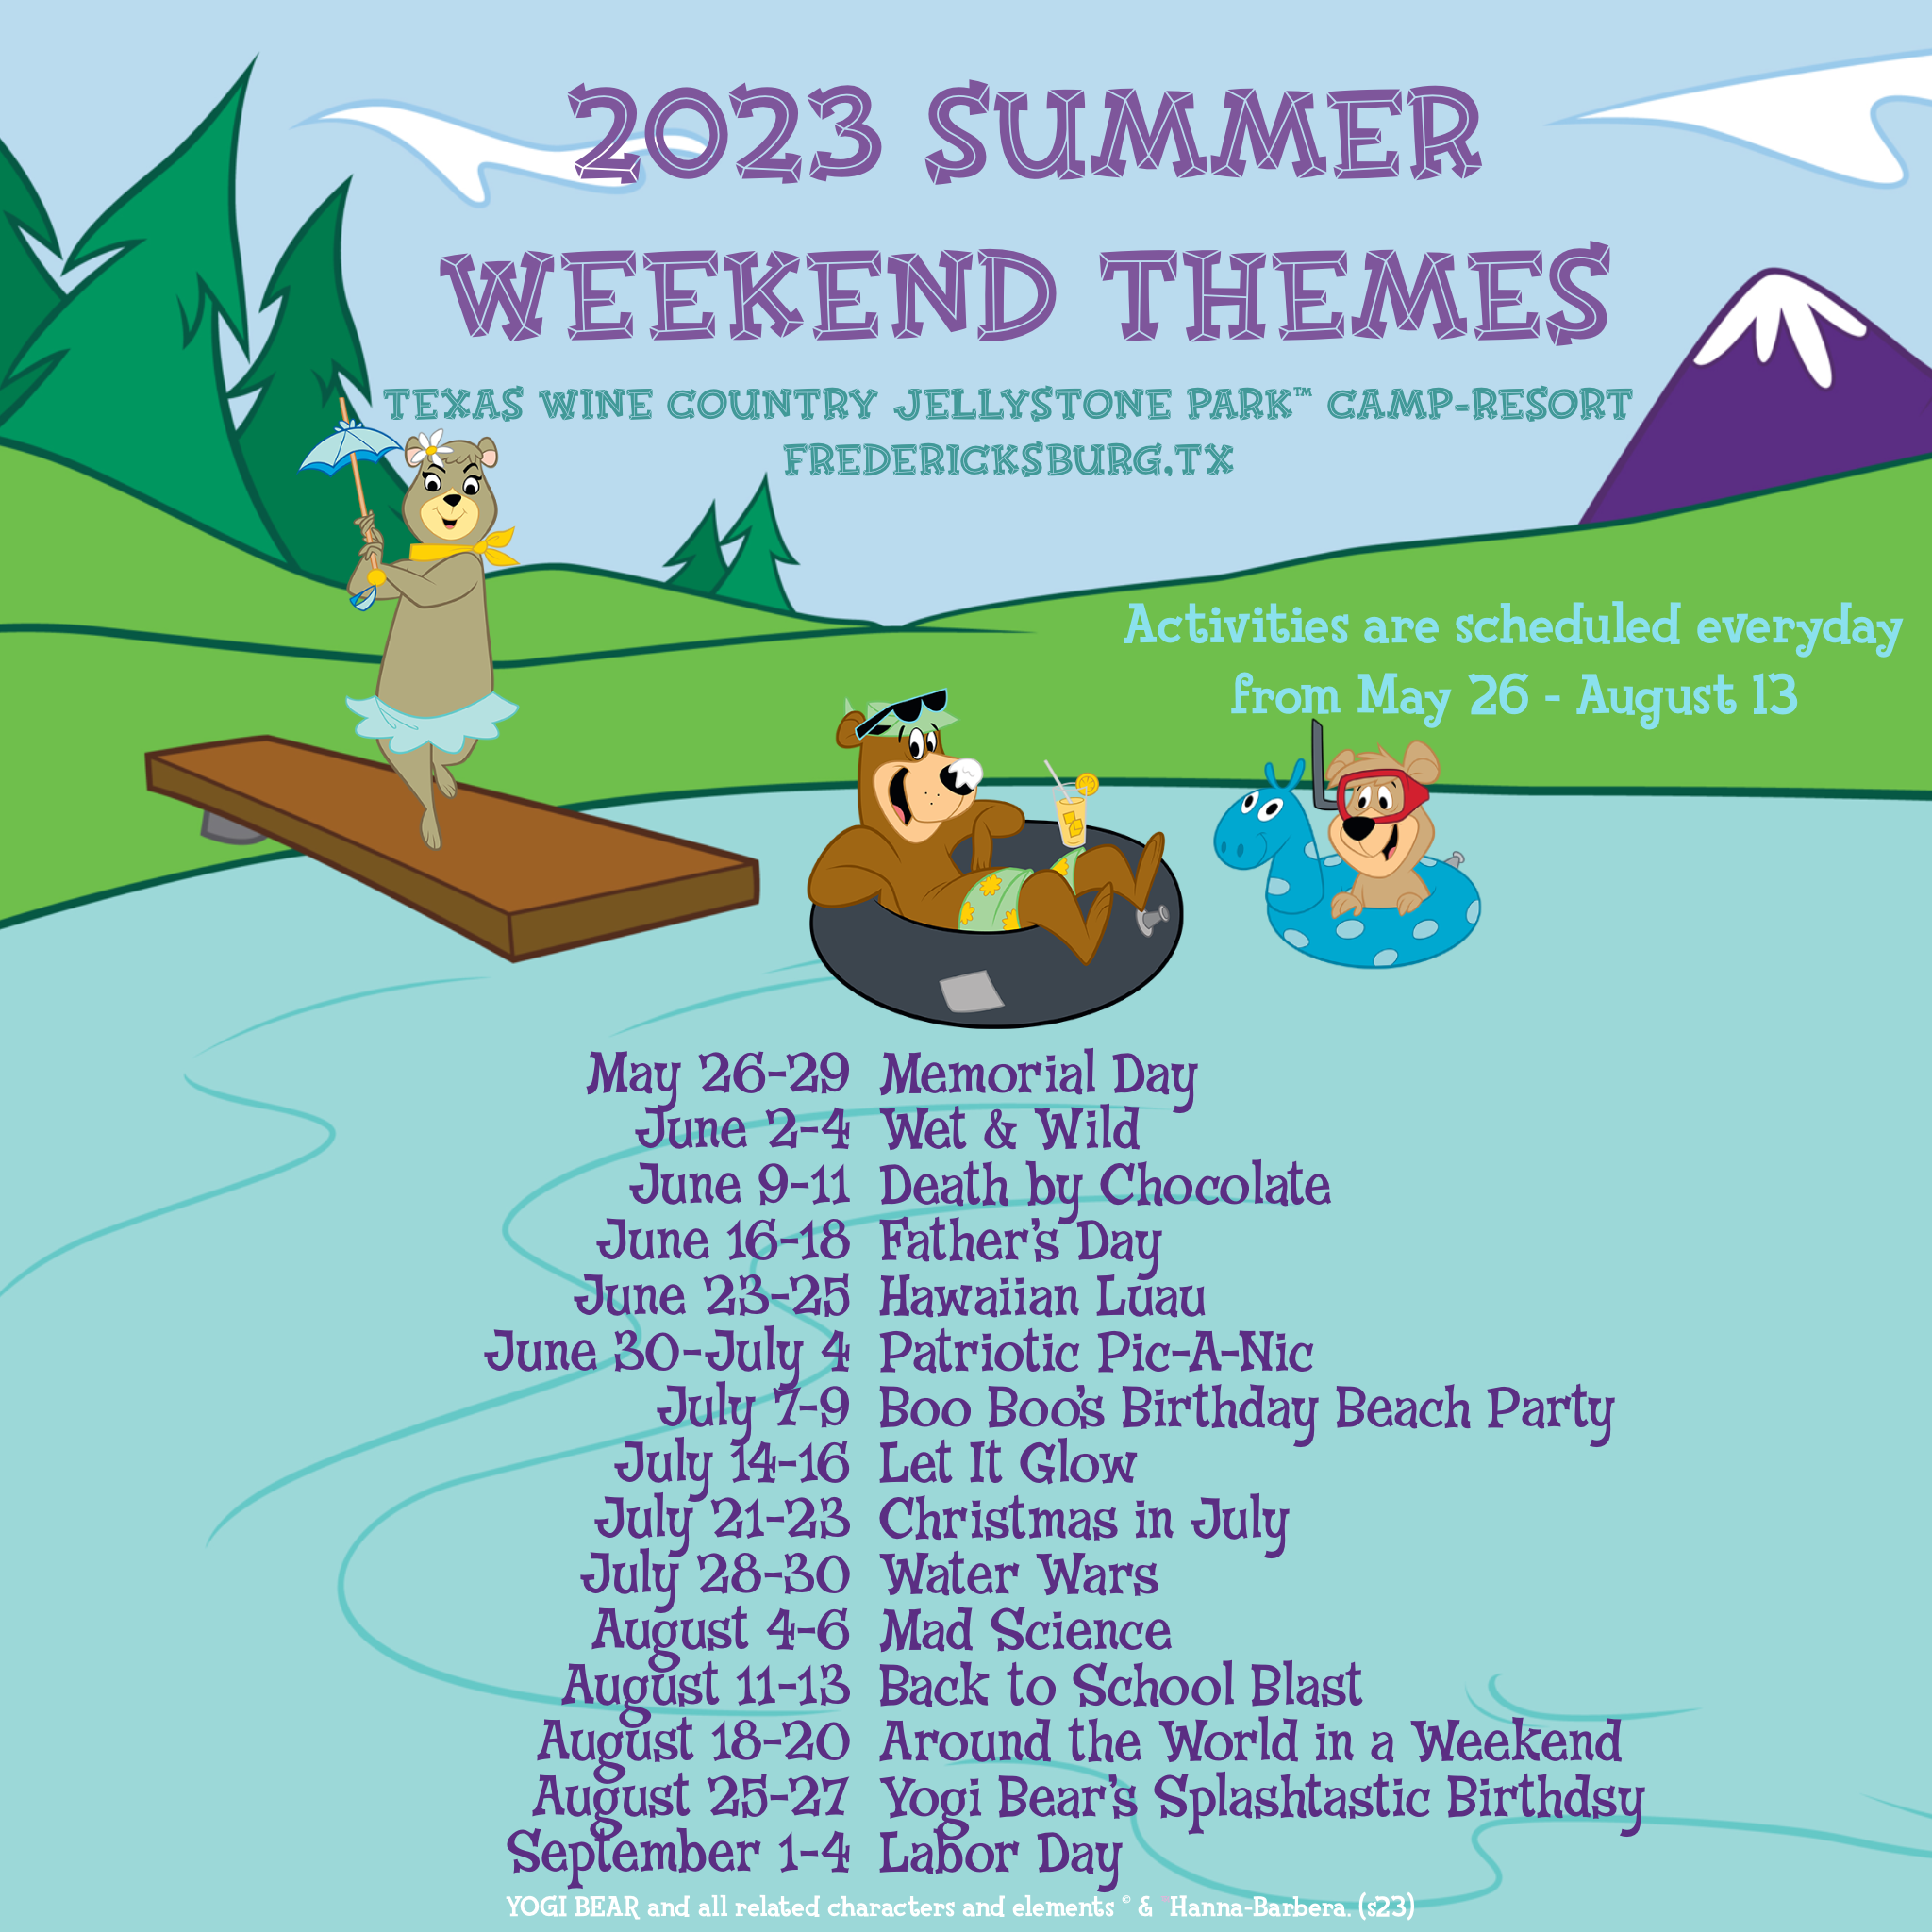 2023 Summer Theme Weekends List